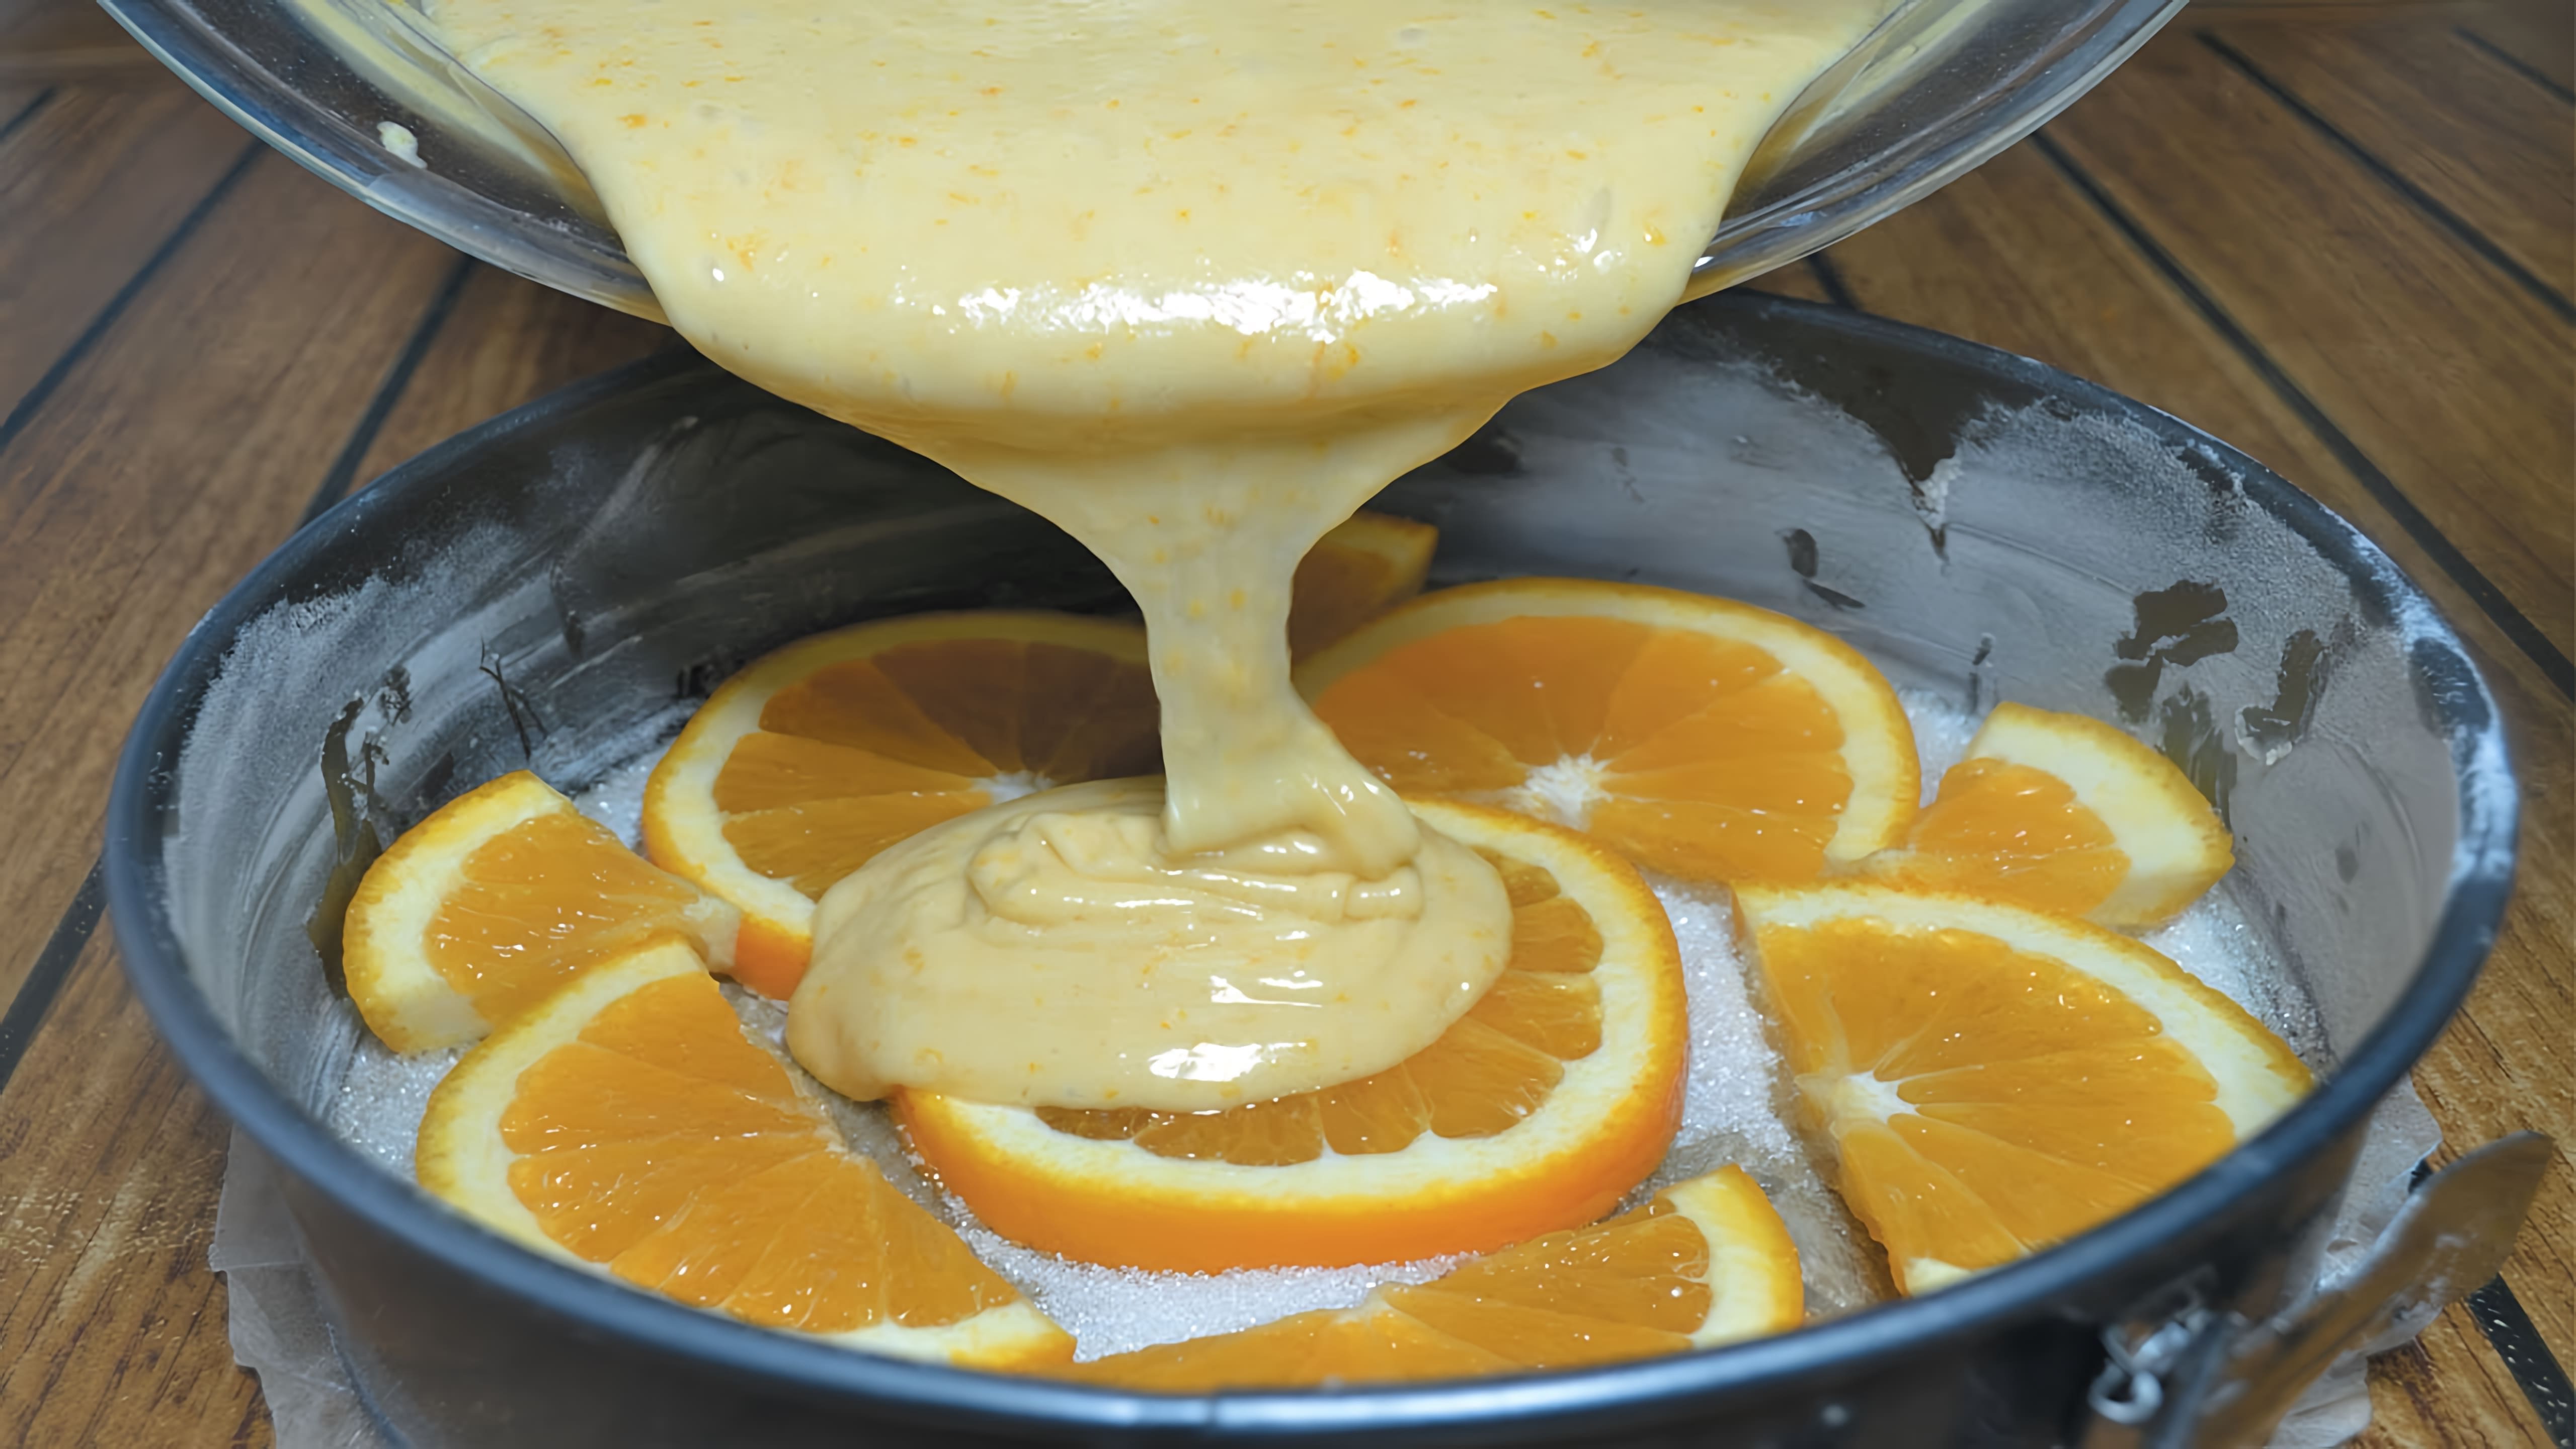 В этом видео демонстрируется процесс приготовления апельсинового торта с использованием двух апельсинов